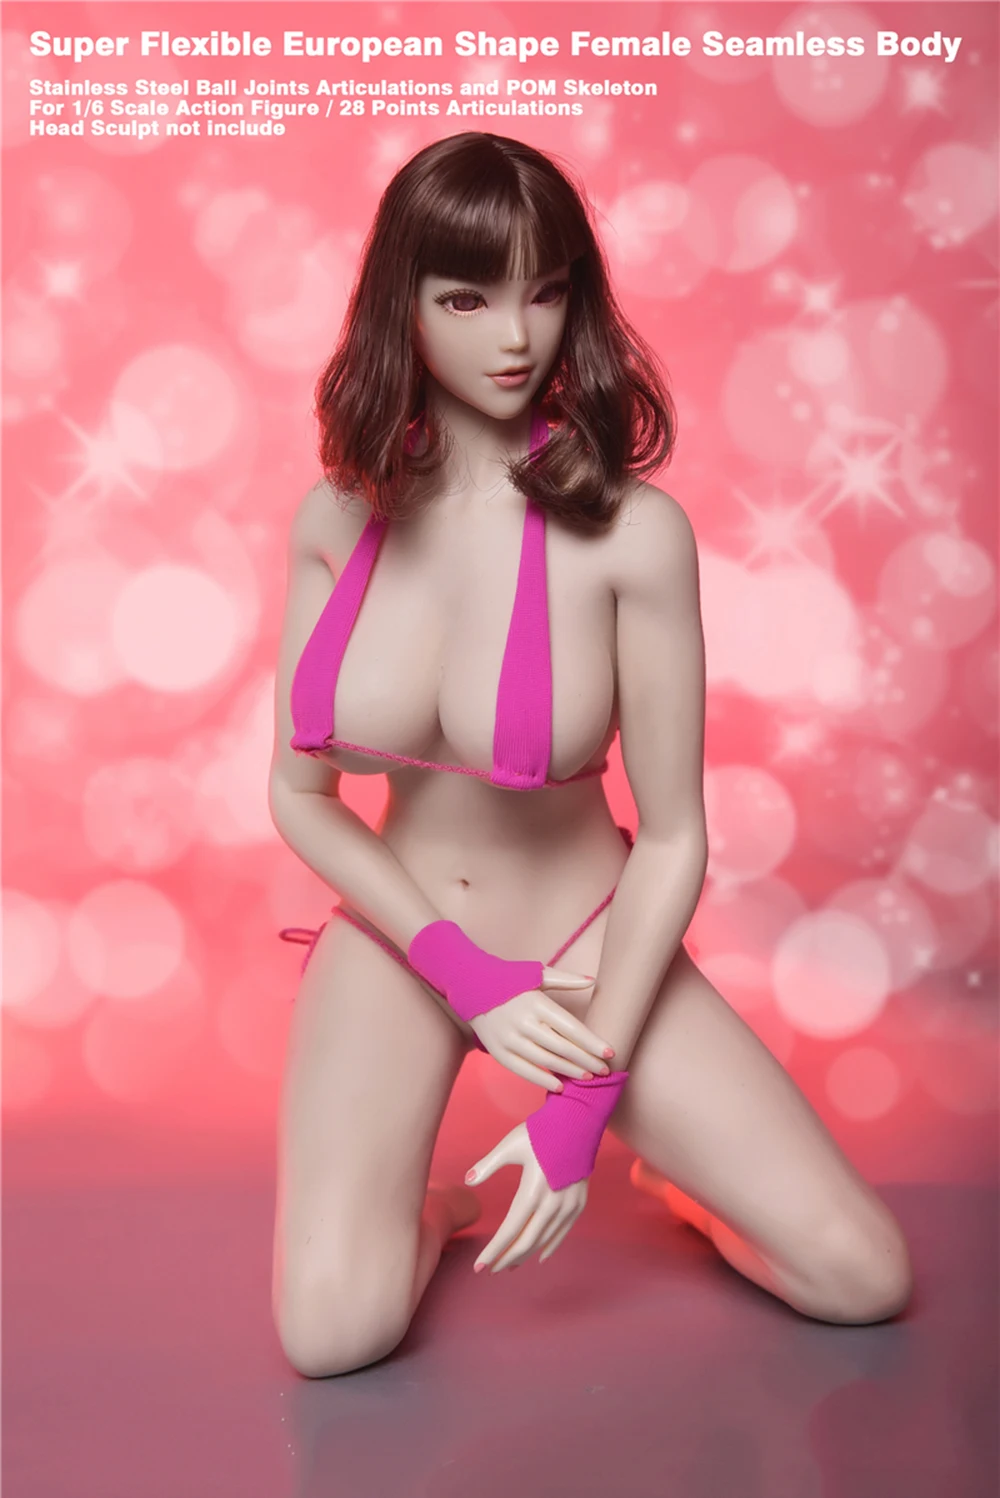 Jiaou Doll 1/6 Европейский супер гибкий сексуальный бесшовный большой бюст женский металлический каркас Съемная/не съемная модель стопы